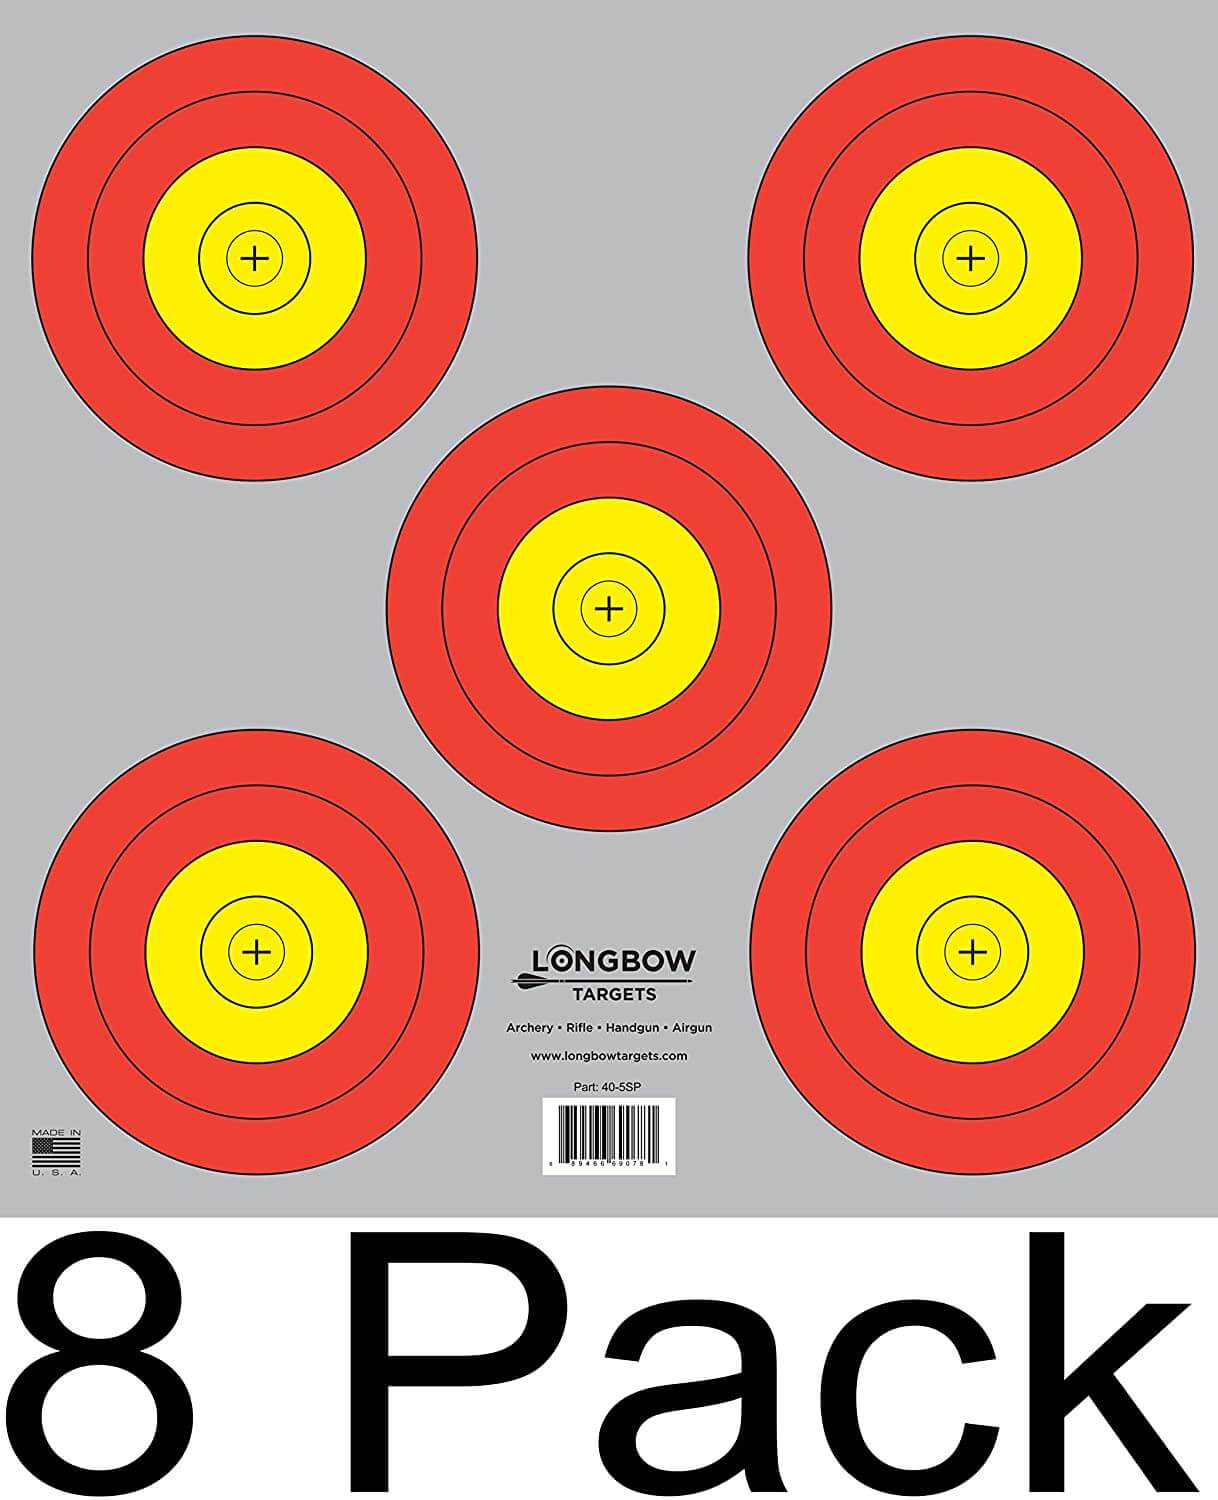 Archery 5 SPOT & 3 SPOT Vegas Targets